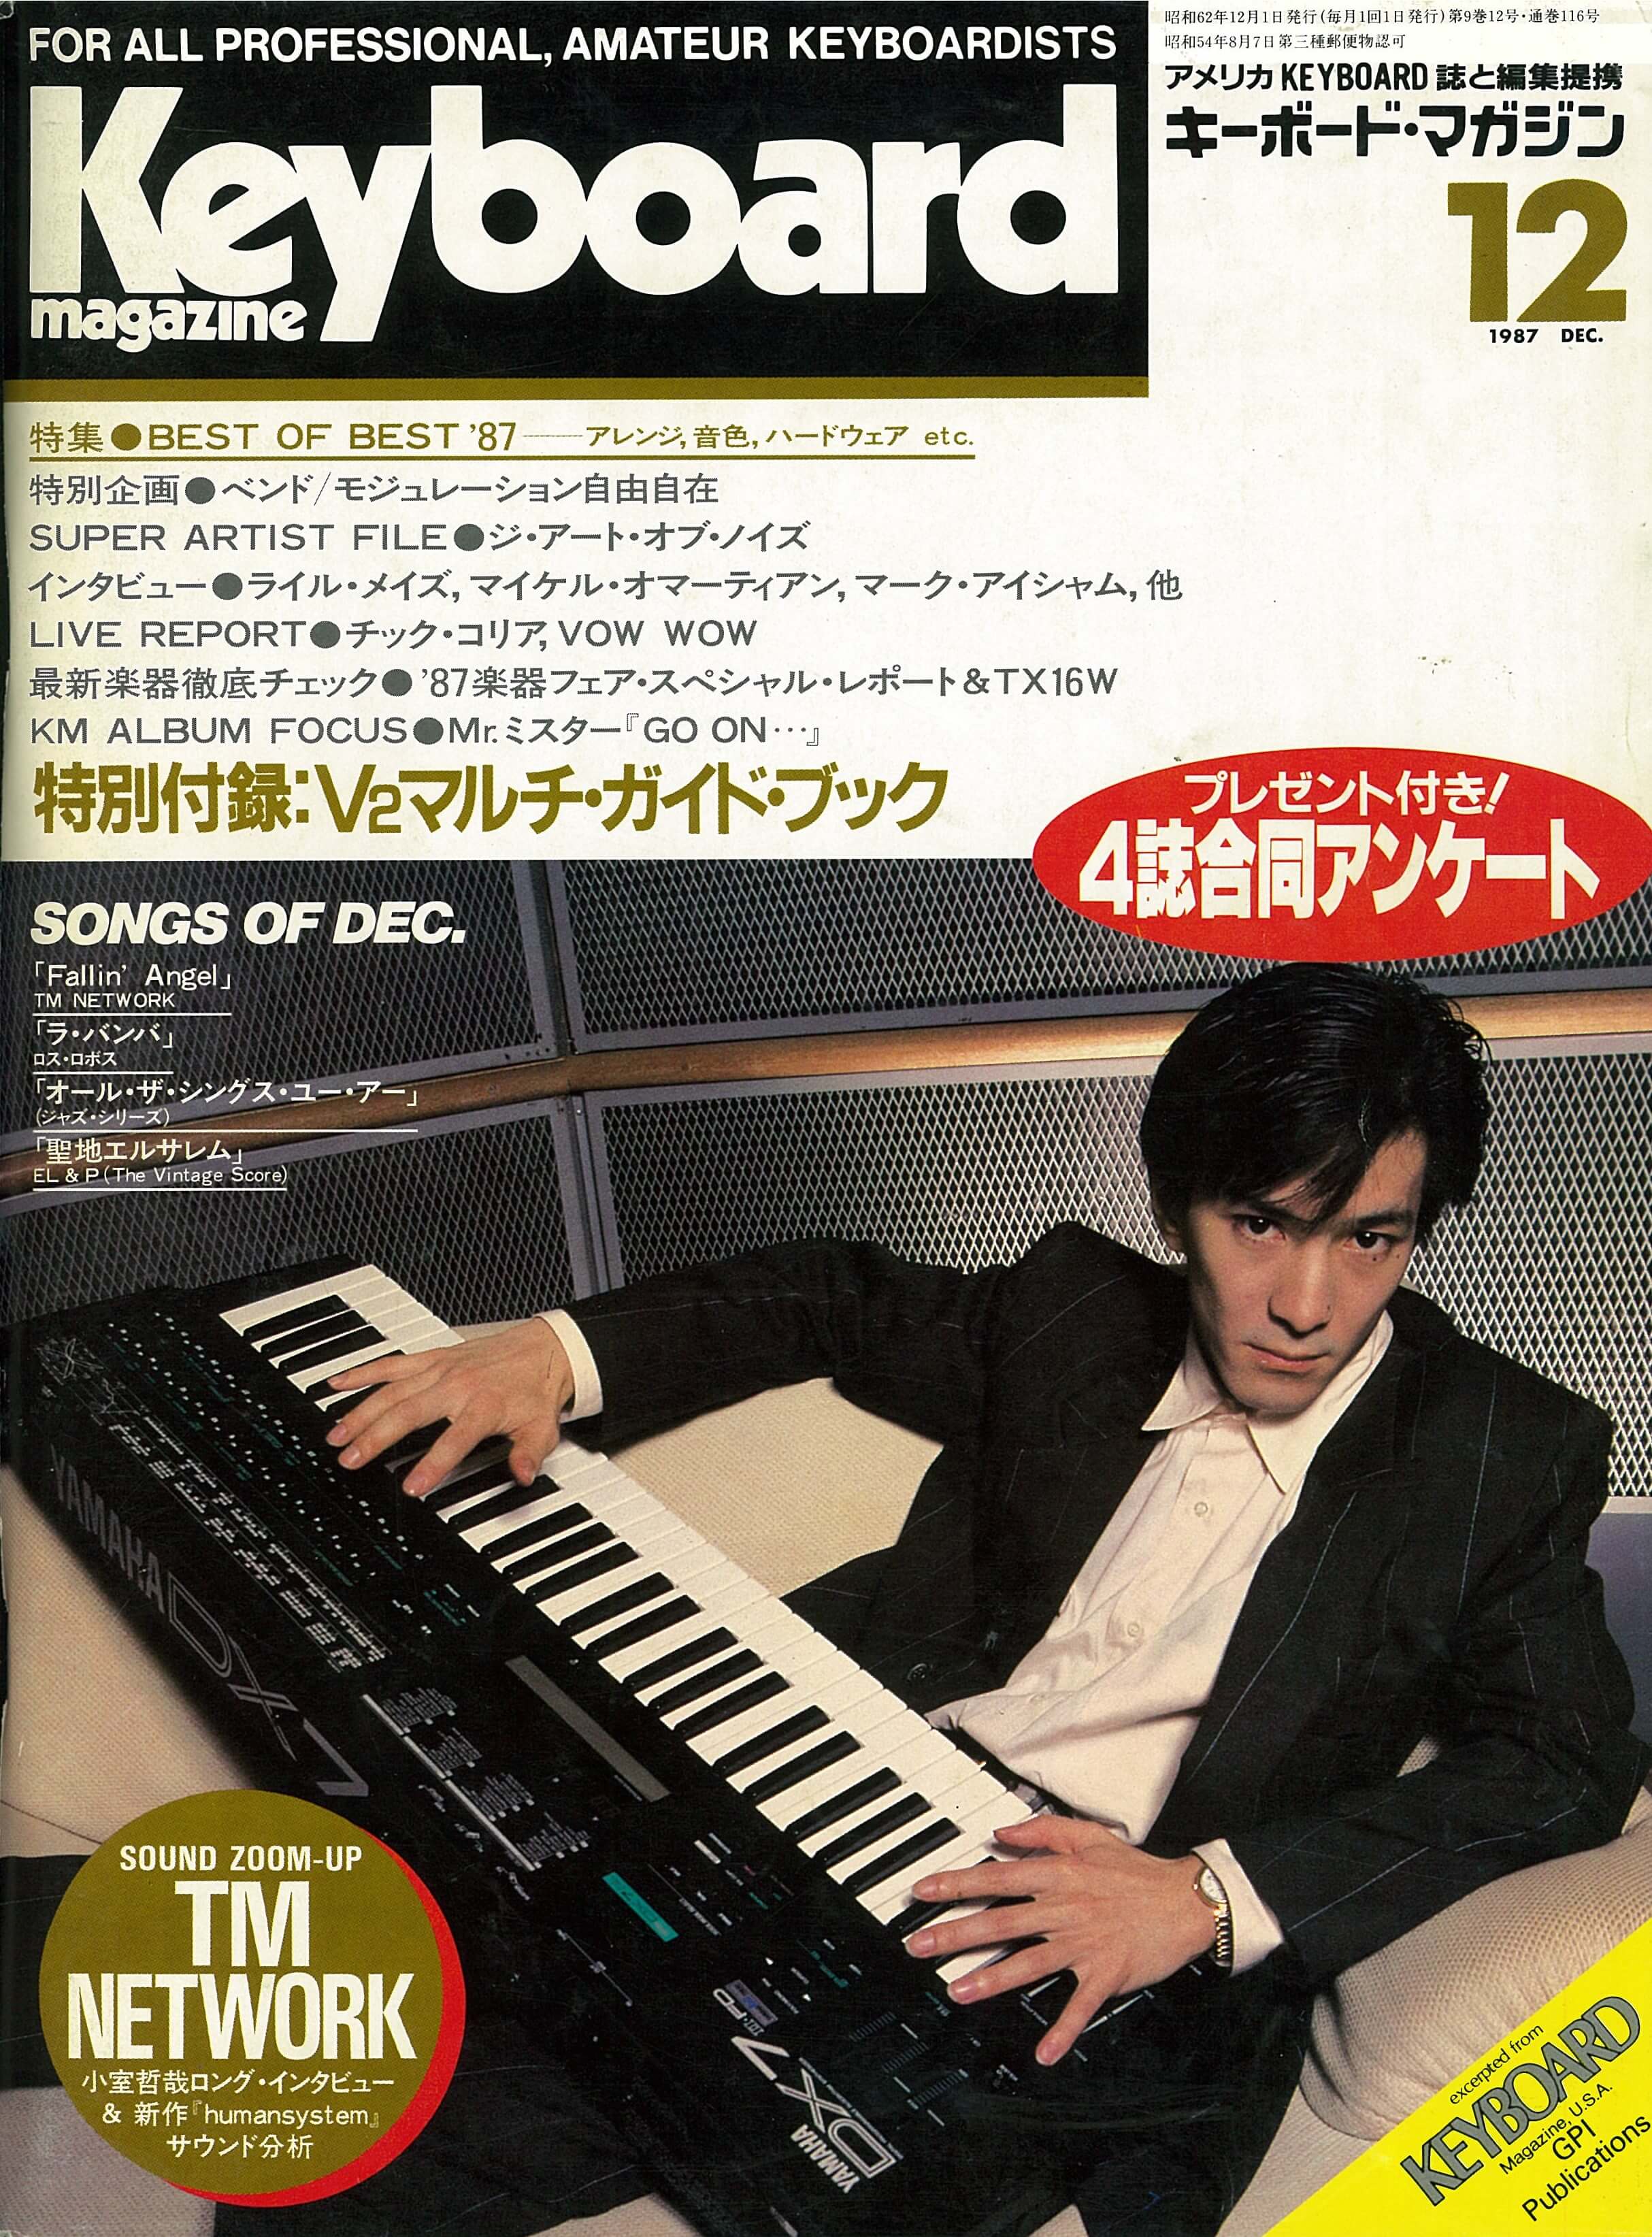 Blog. 「キーボード・マガジン Keyboard magazine 1987年12月号」 久石